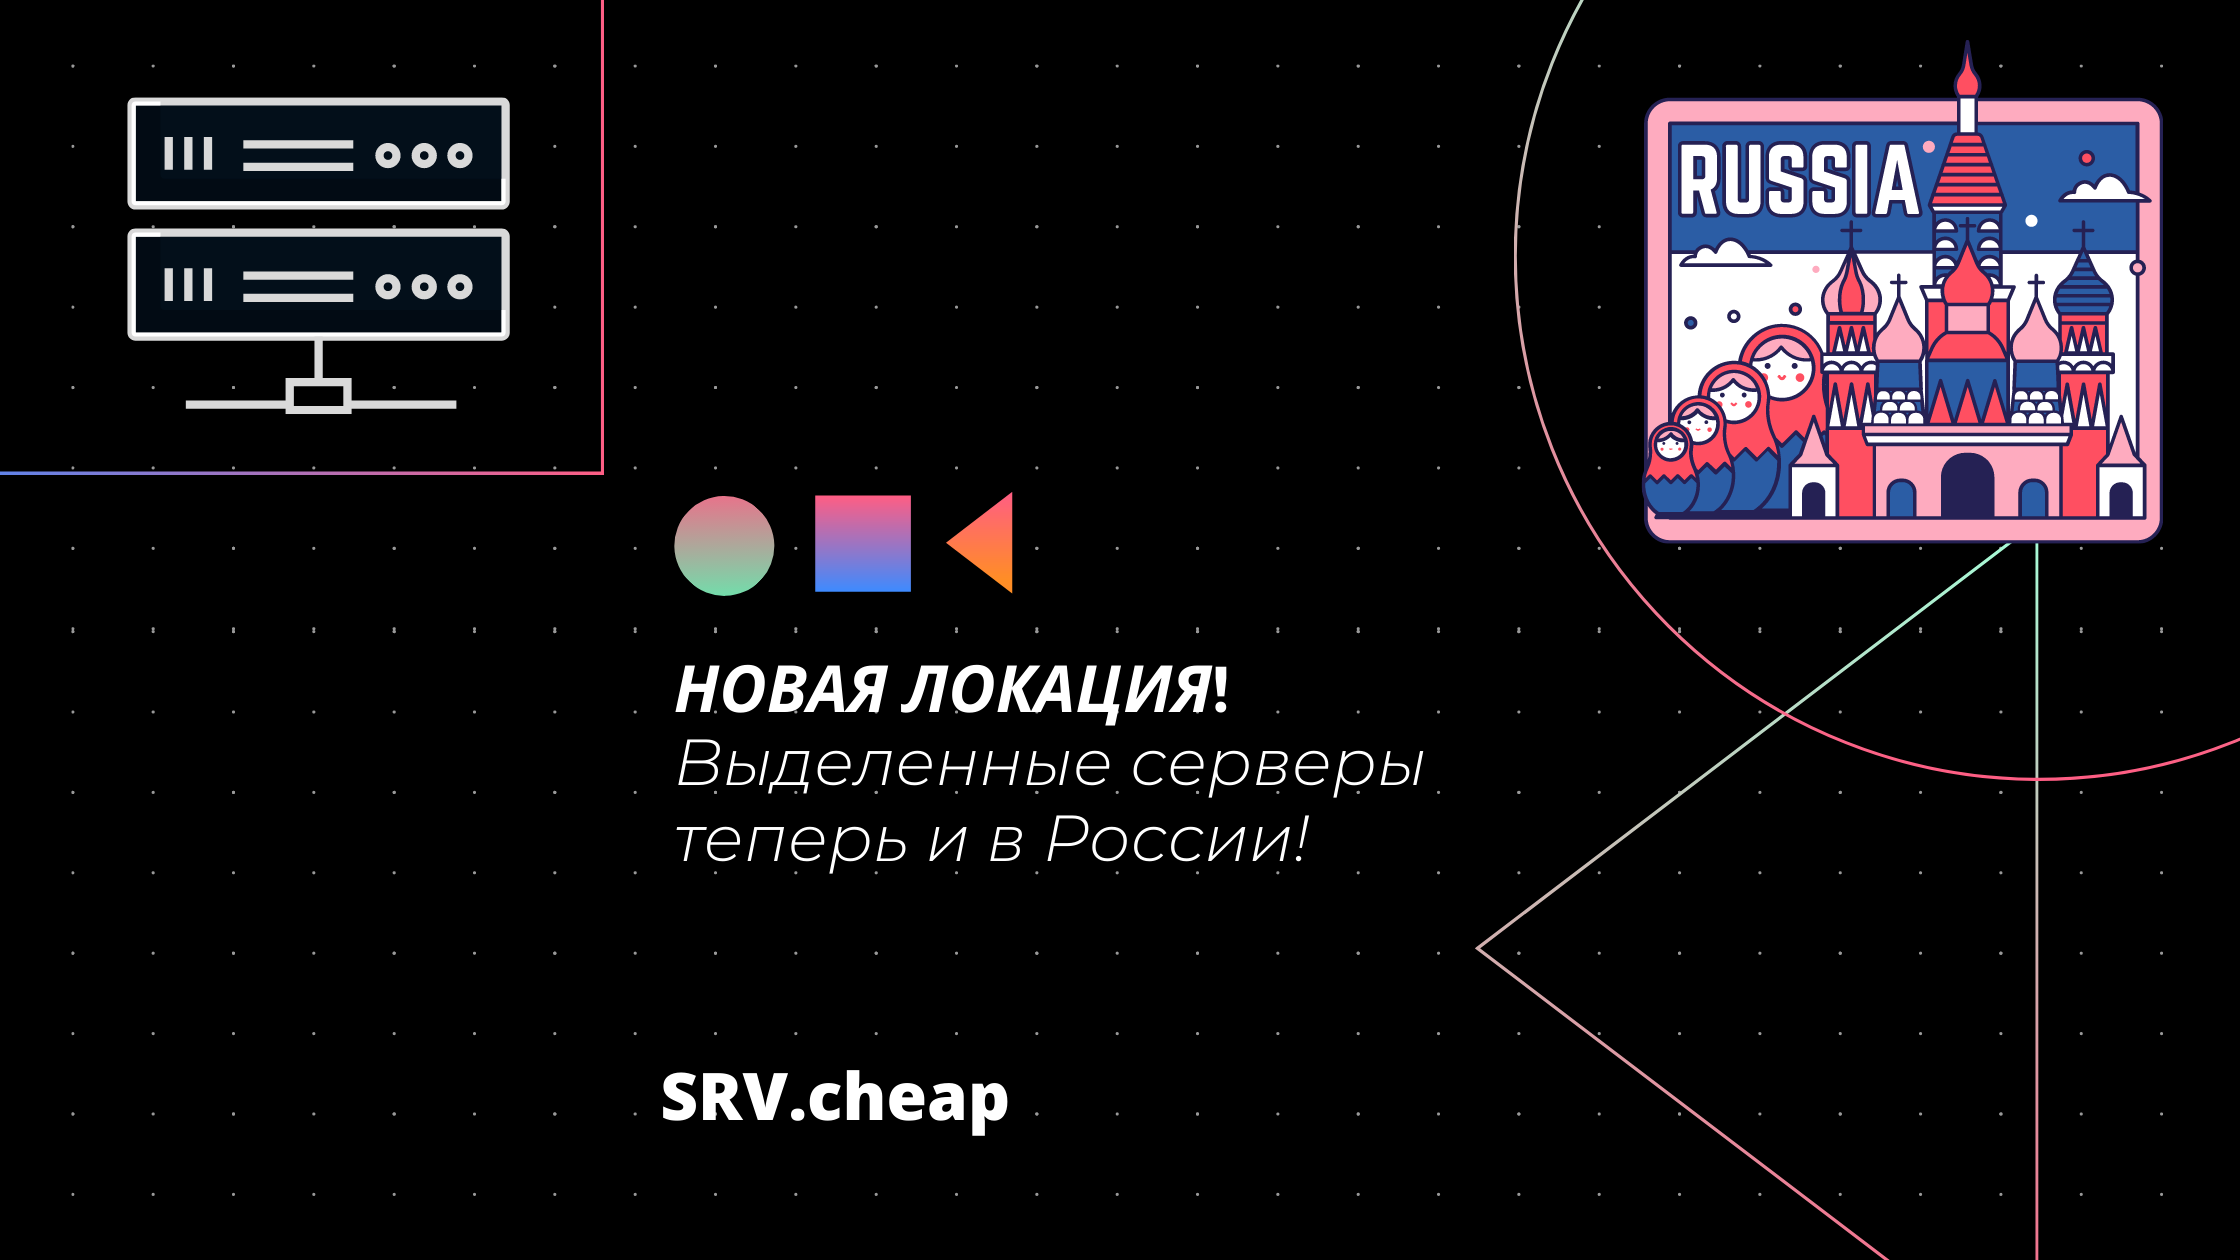 srv.cheap - дешевые выделенные серверы в России с защитой от DDoS-атак